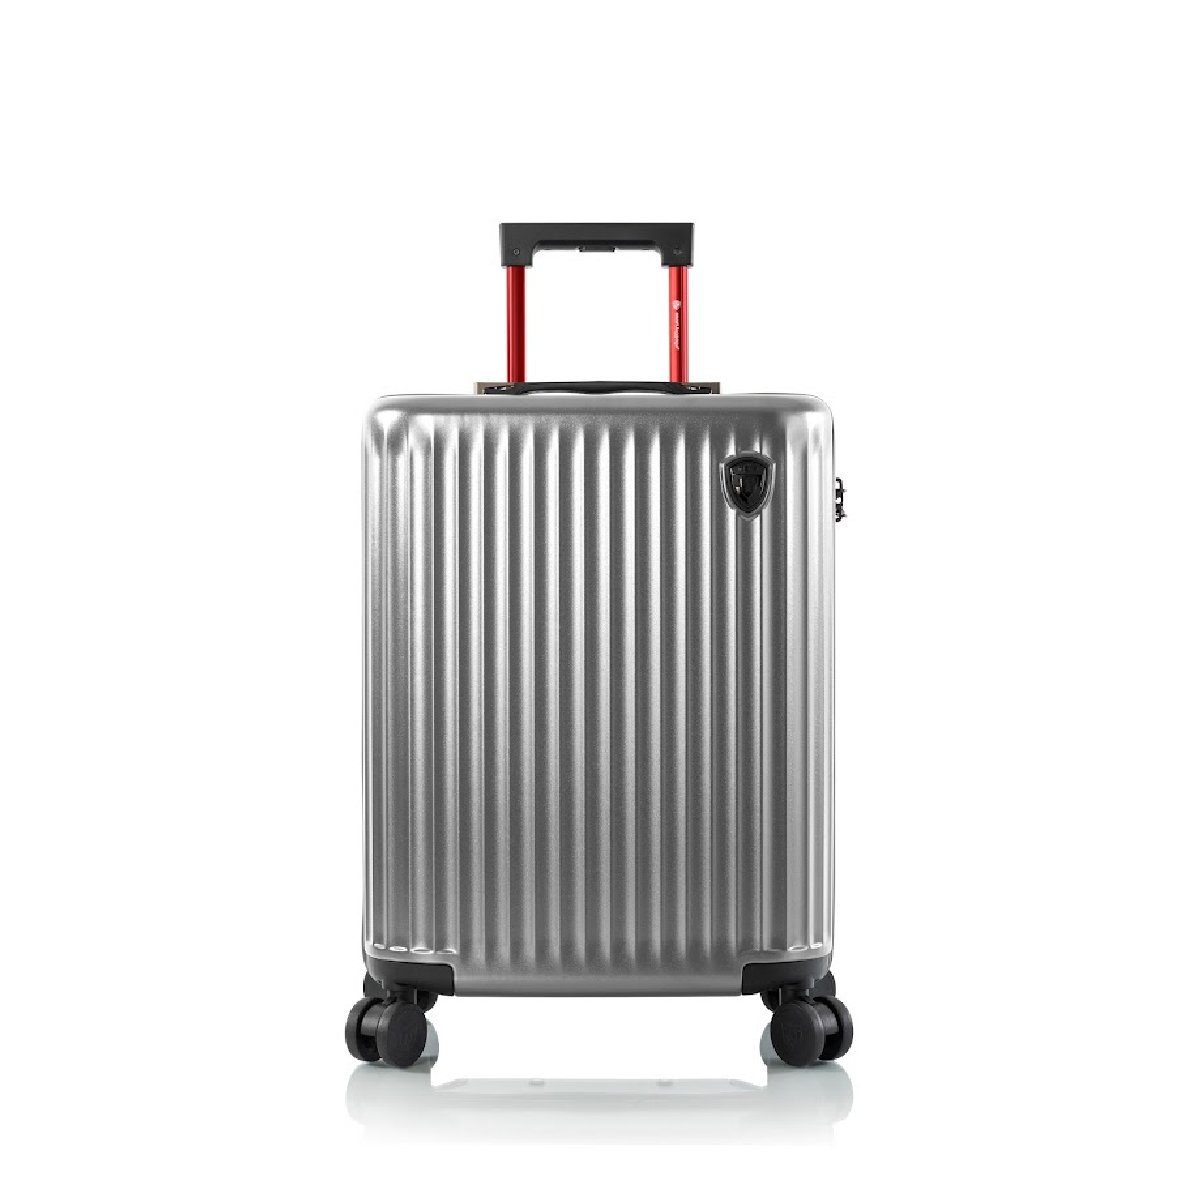 Smart Luggage - Handgepäck Hartschale in Silber von Heys